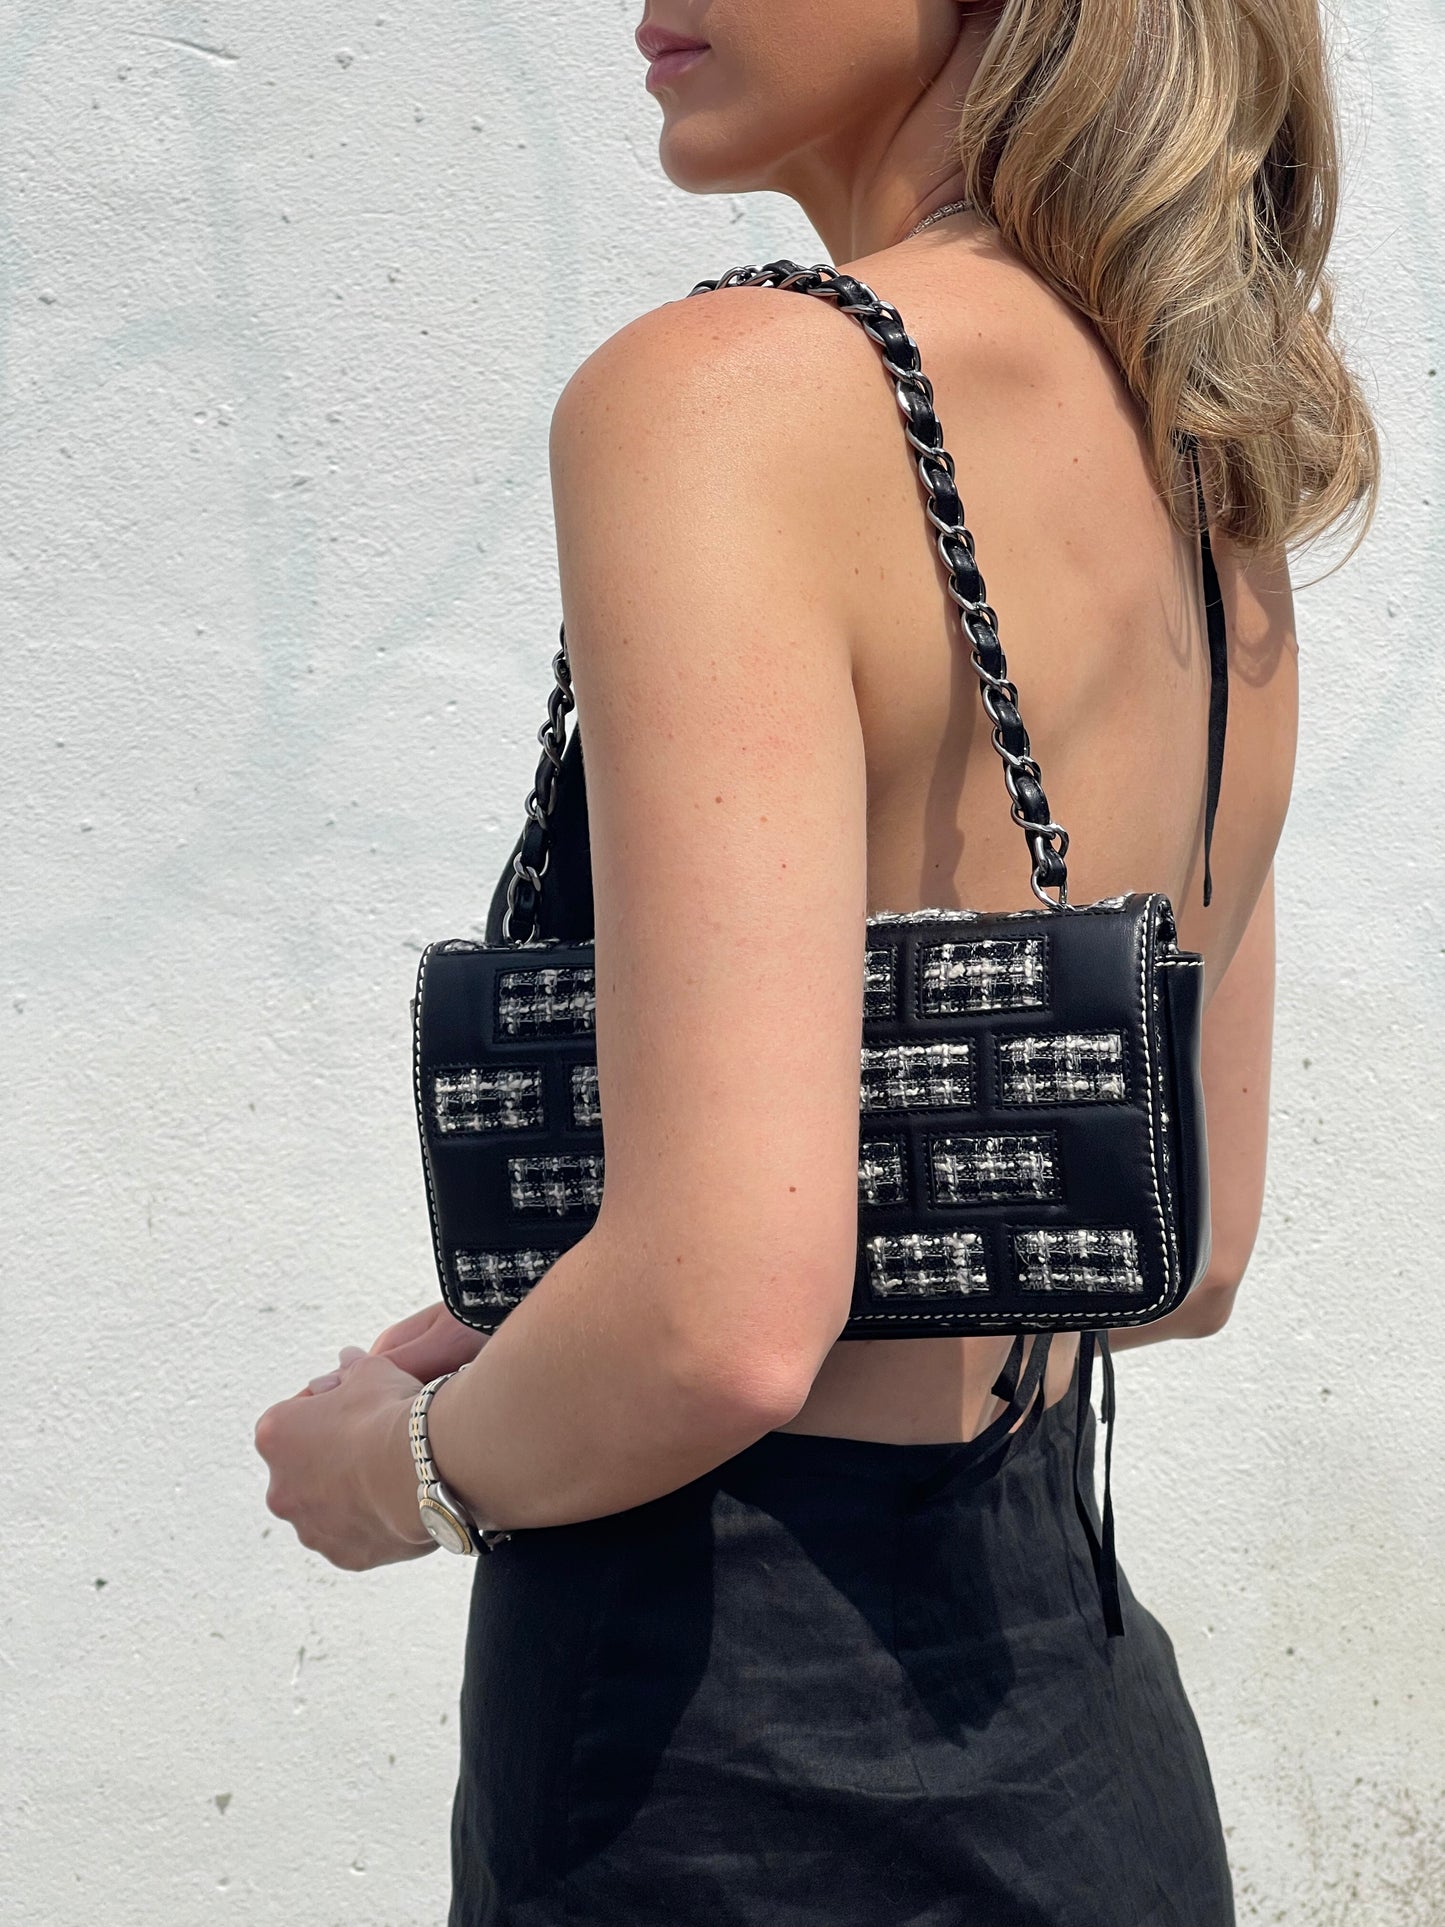 Chanel Brick Reissue 2.55 Tweed Flap Bag